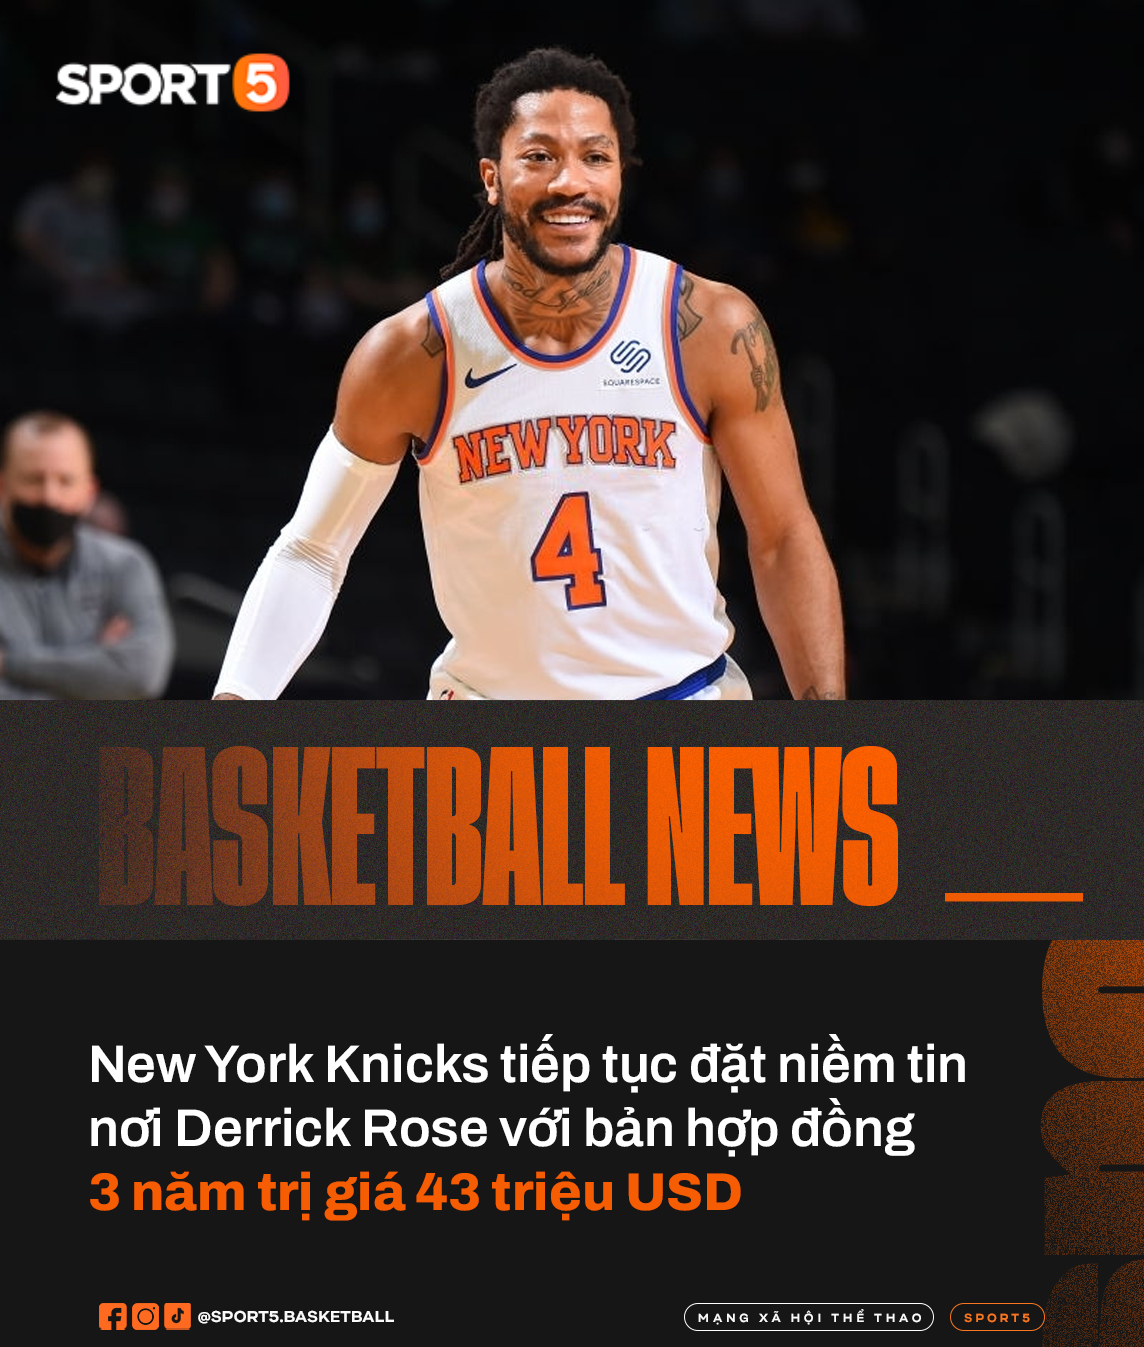 Derrick Rose: Hậu mùa giải trong mơ cùng New York Knicks và bản hợp đồng tưởng thưởng ấn định tương lai - Ảnh 1.